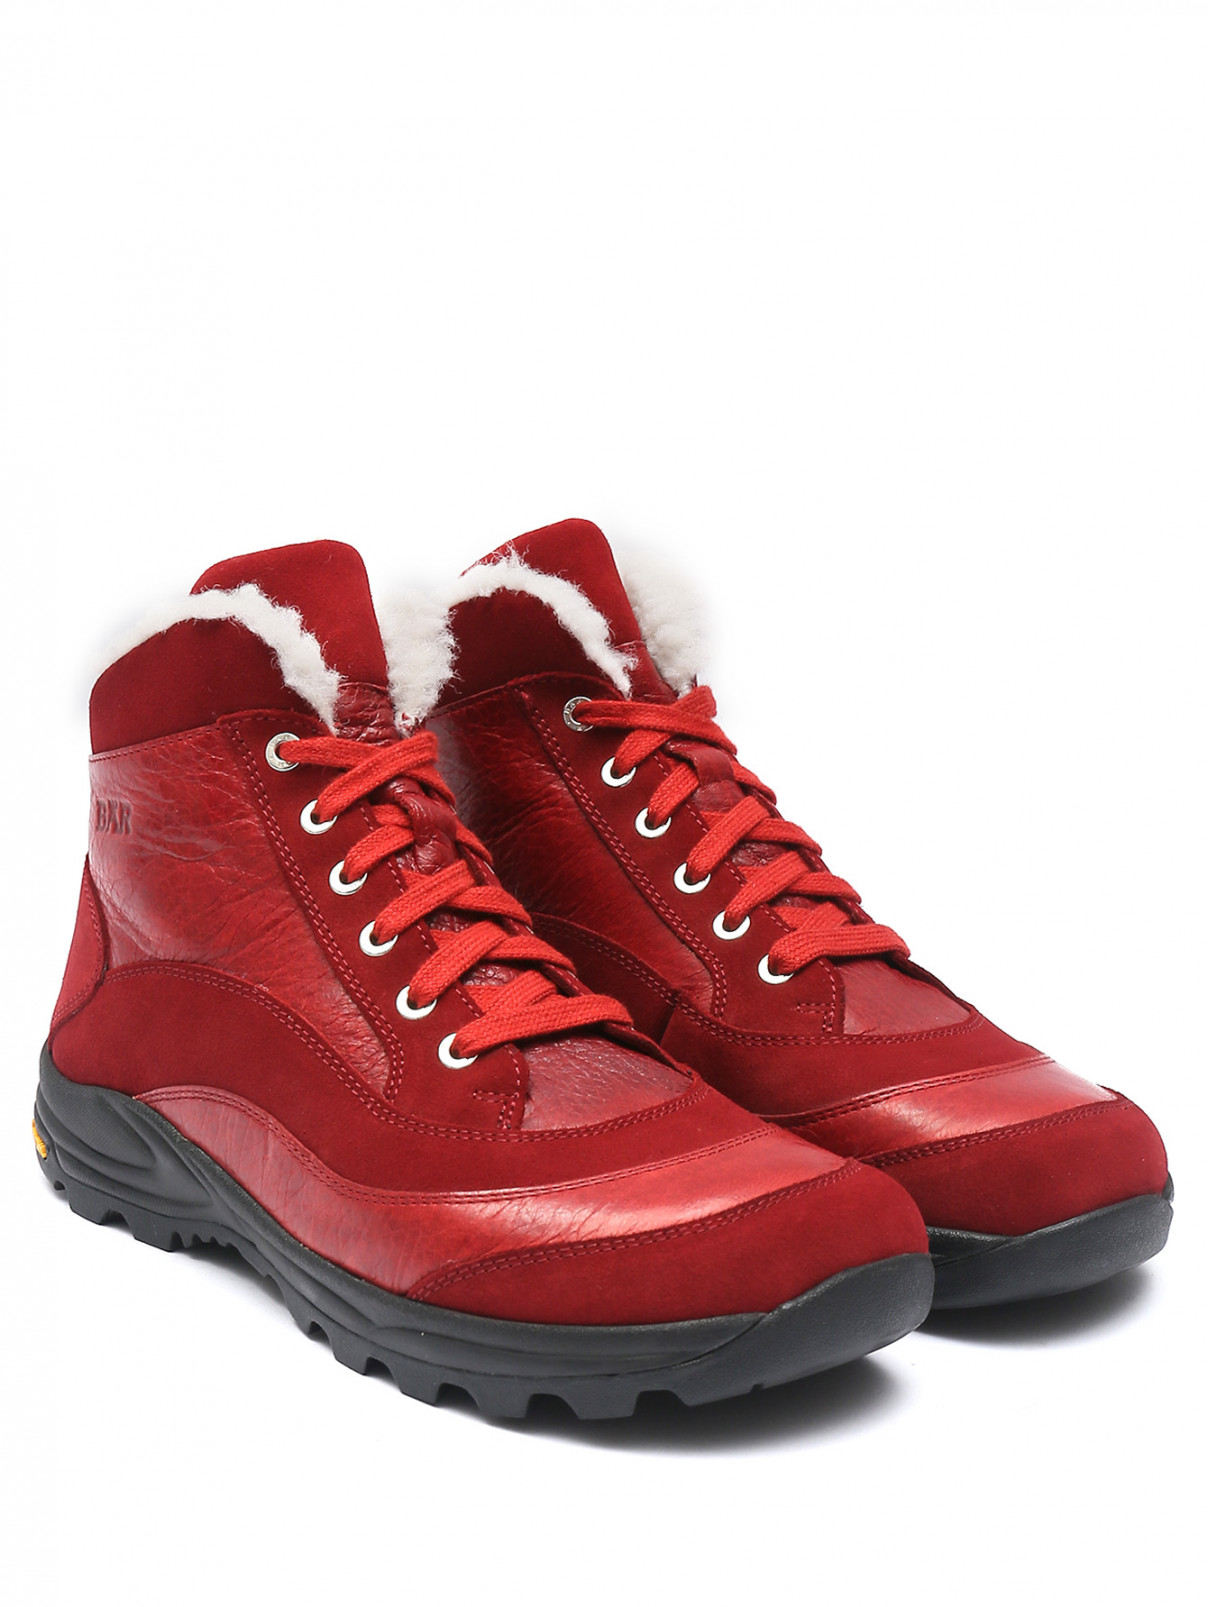 Ботинки из кожи и замши на шнурках BAER  –  Общий вид  – Цвет:  Красный